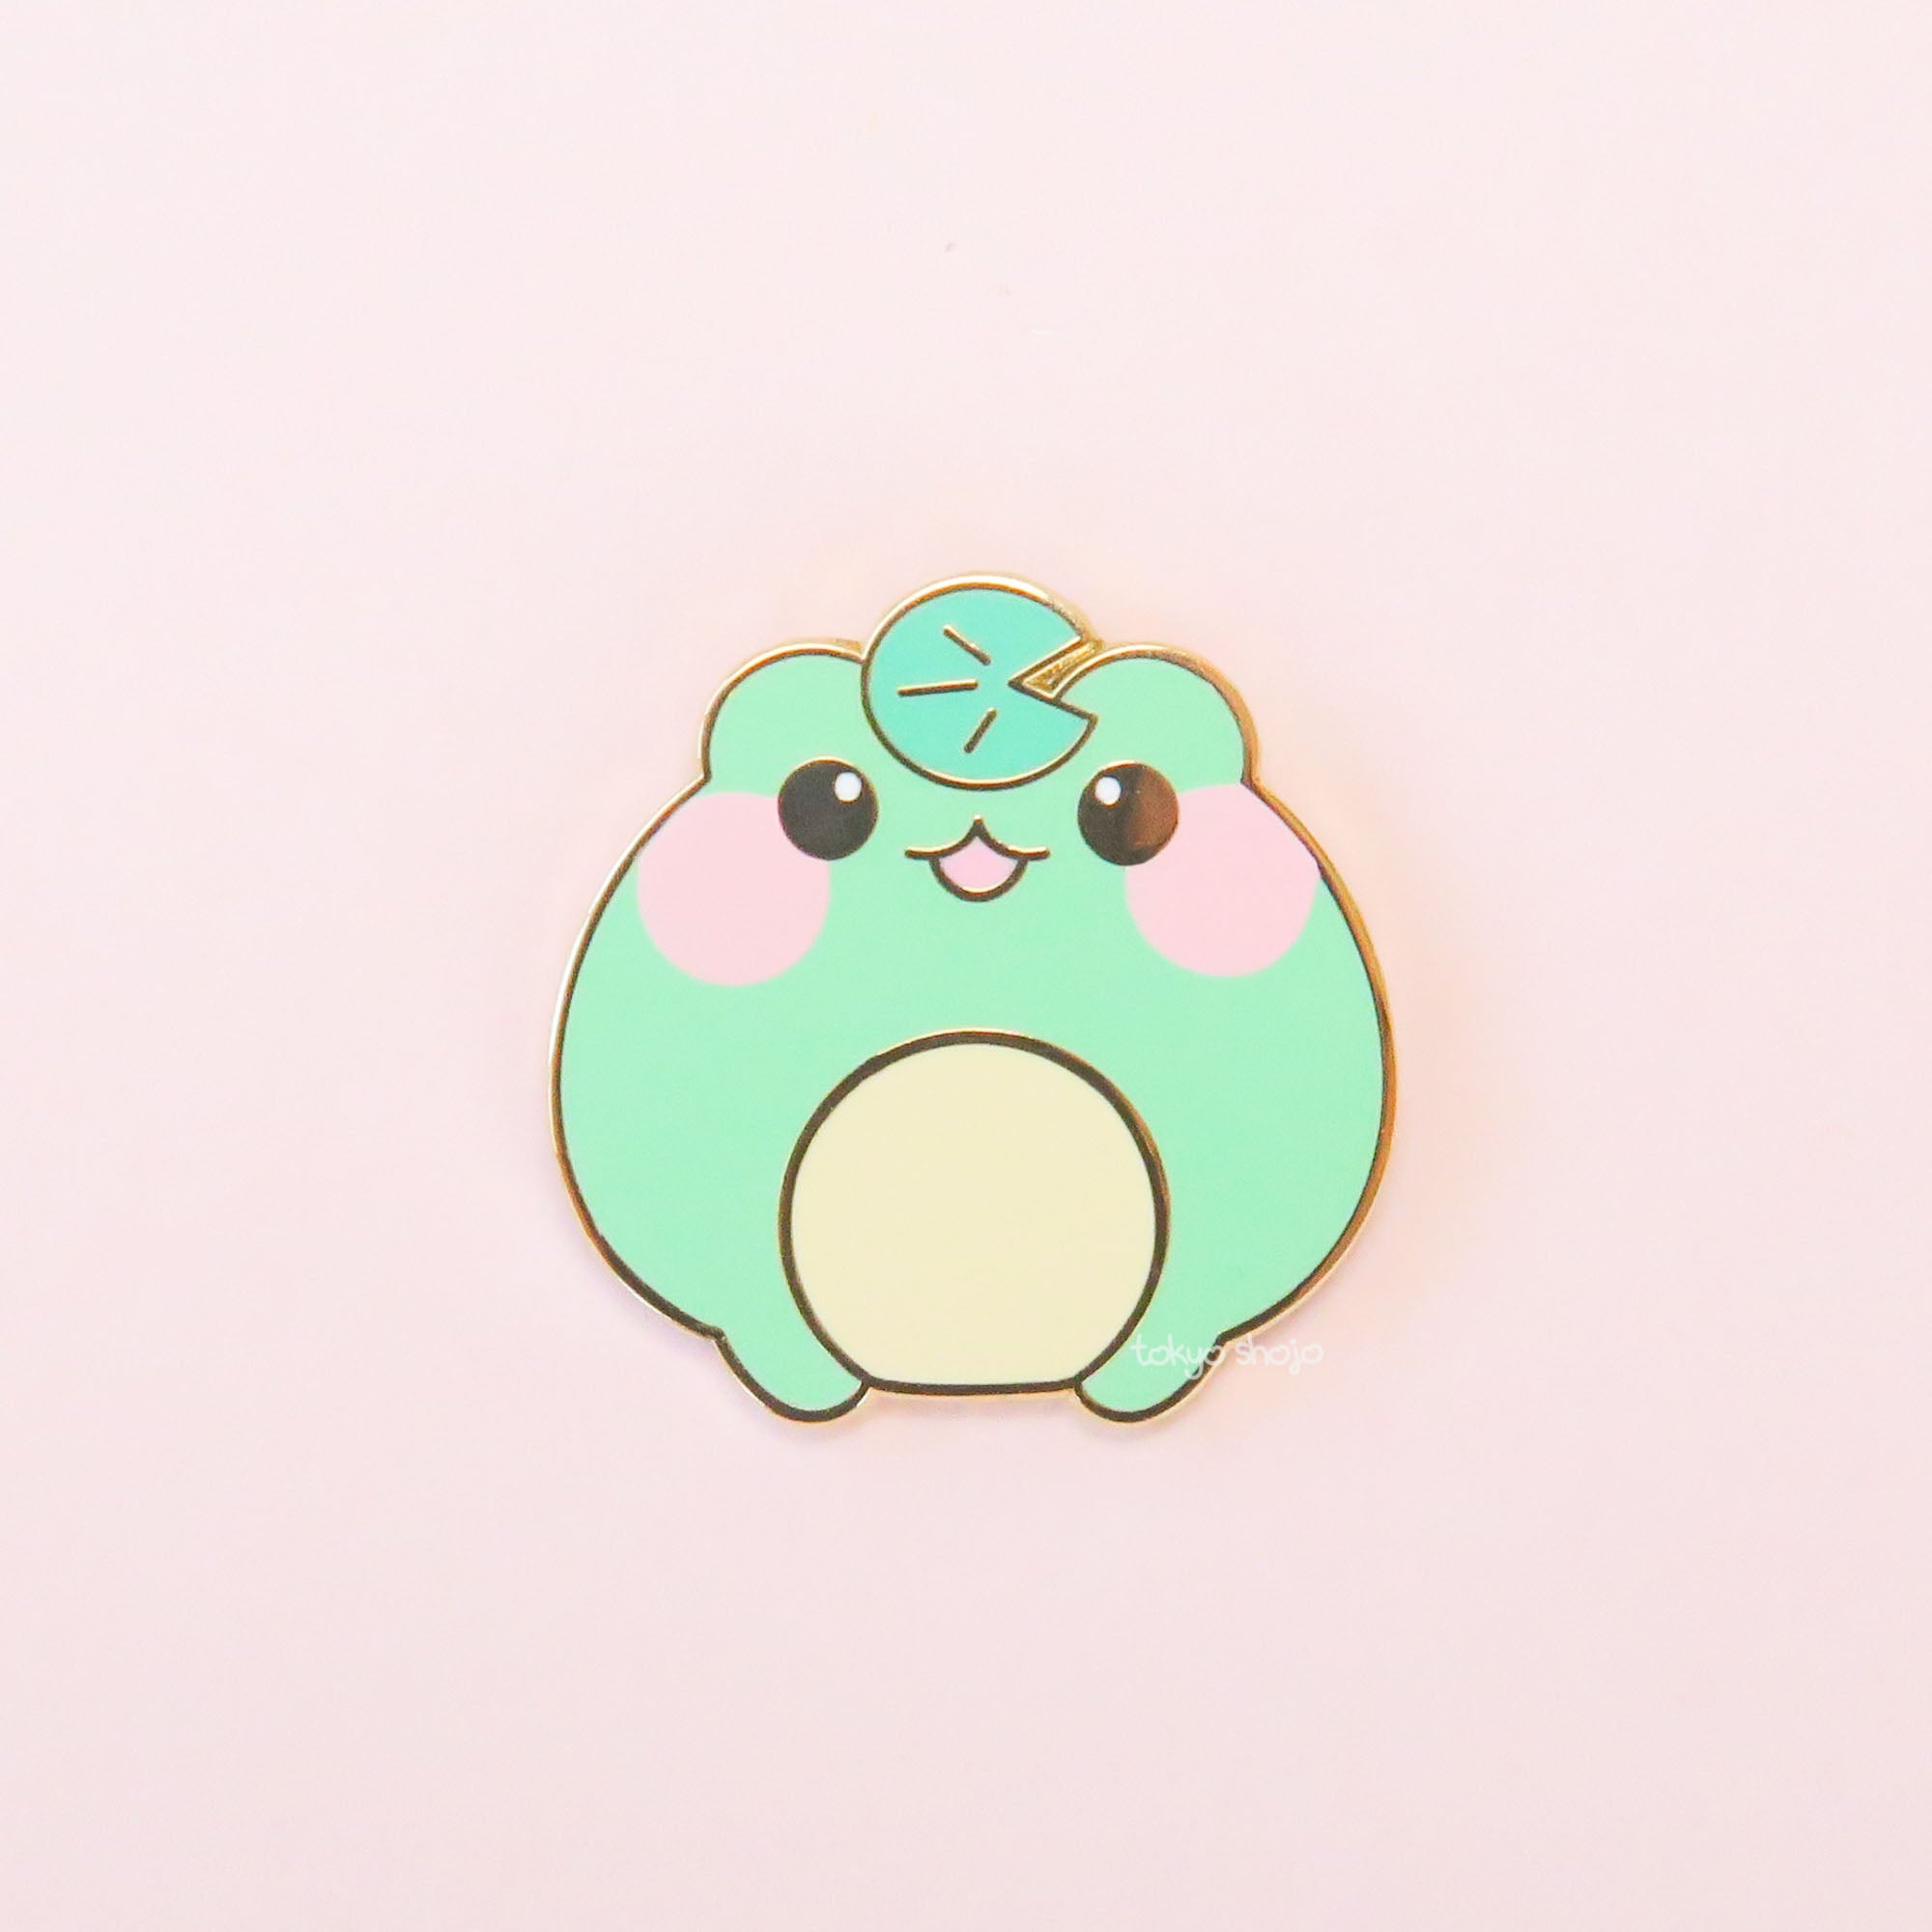 [Tokyo Shojo] Tsuyu the Frog Pin